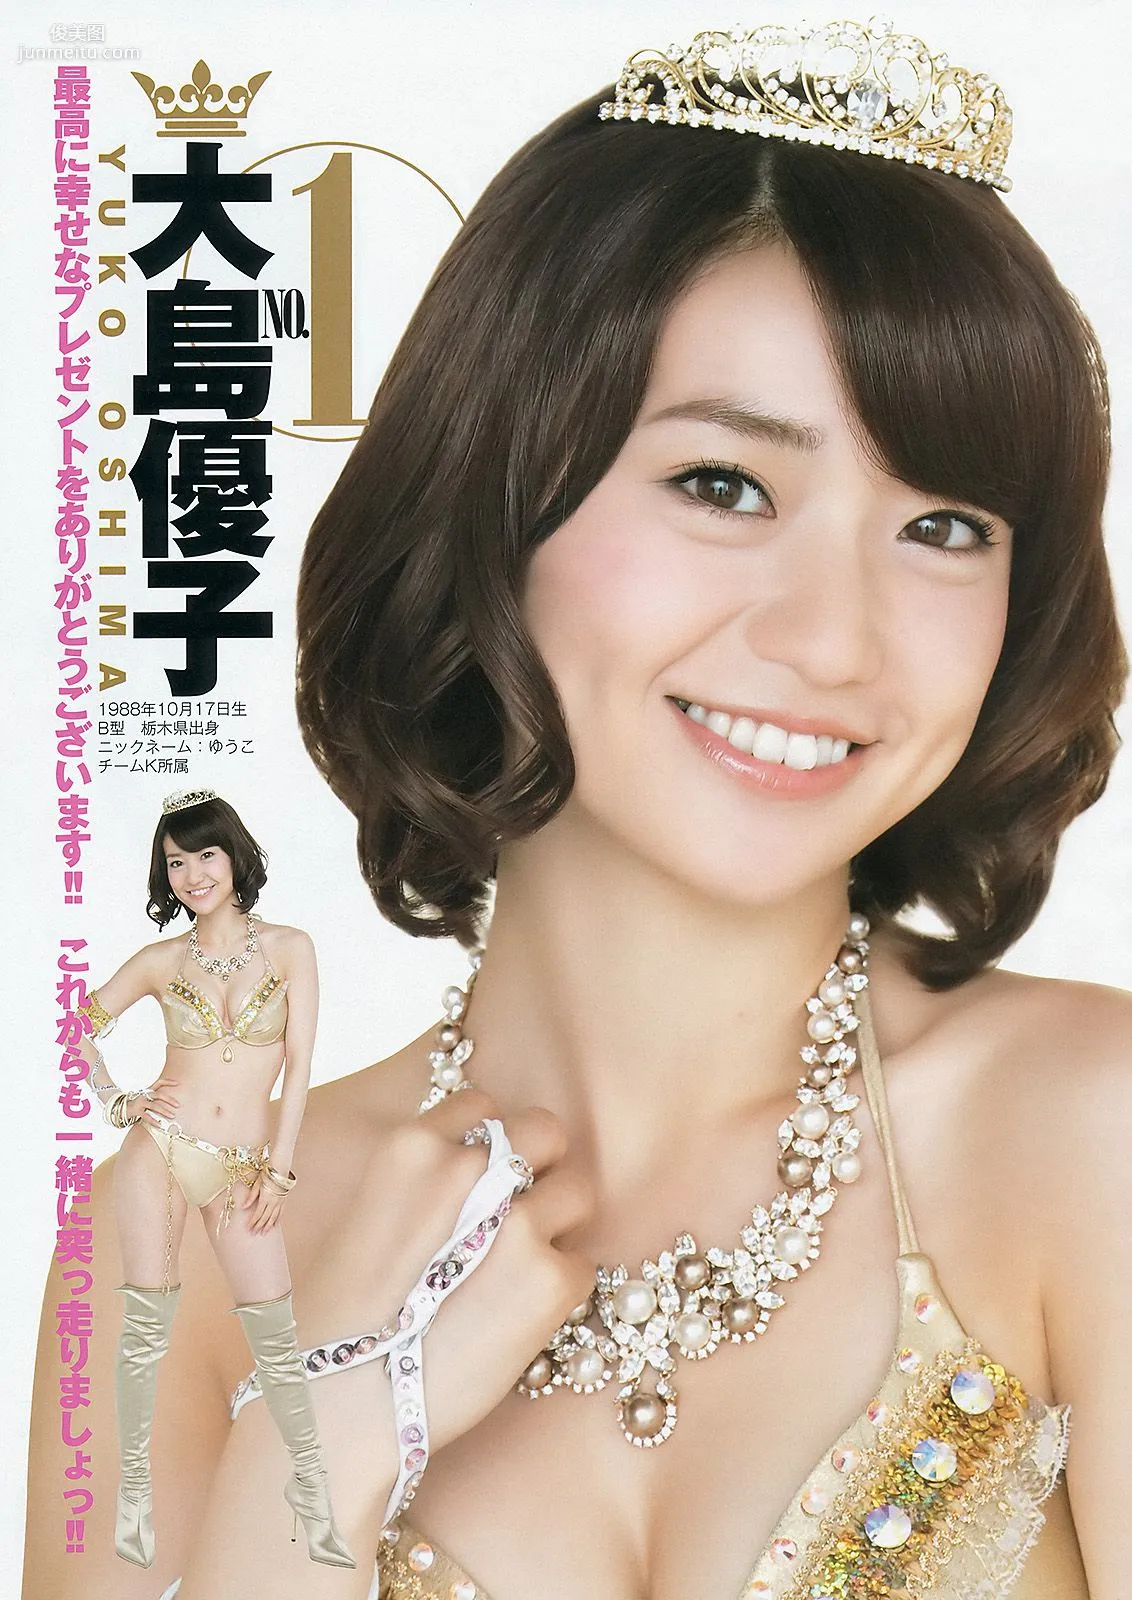 篠田麻里子 伊藤梨沙子 橋本愛 AKB48 [Weekly Young Jump] 2012年No.37-38写真杂志16